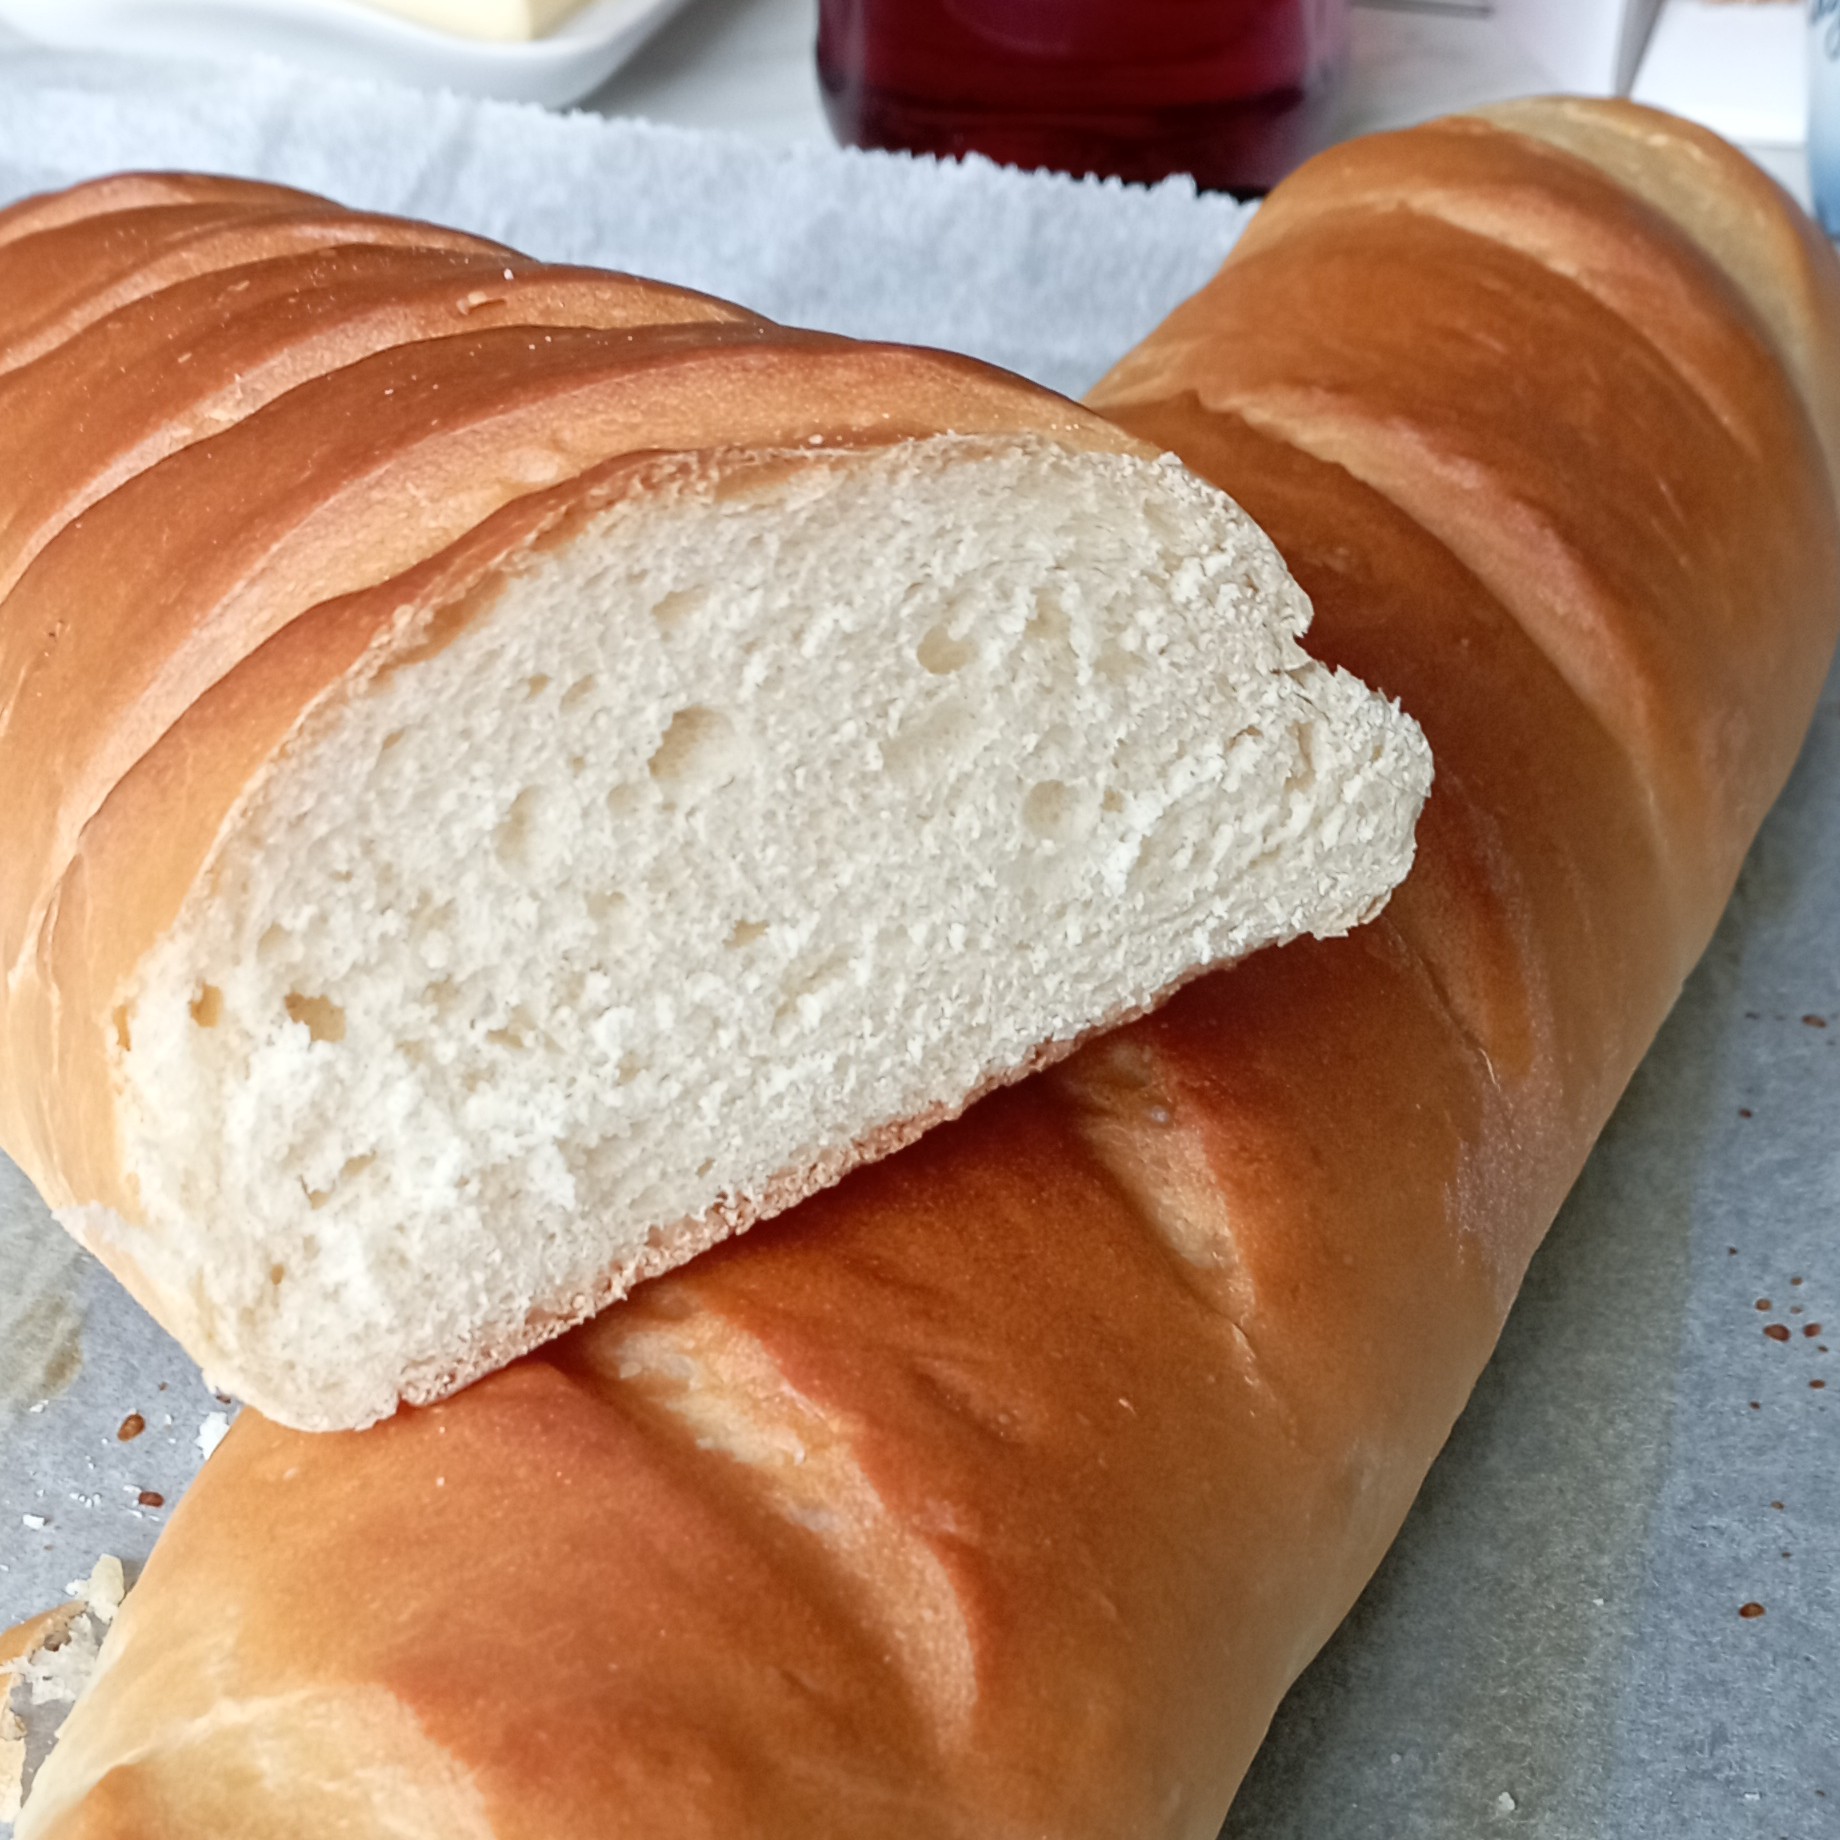 Домашний хлеб, батоны! Супер рецепт! Вкусно, просто и бюджетно!